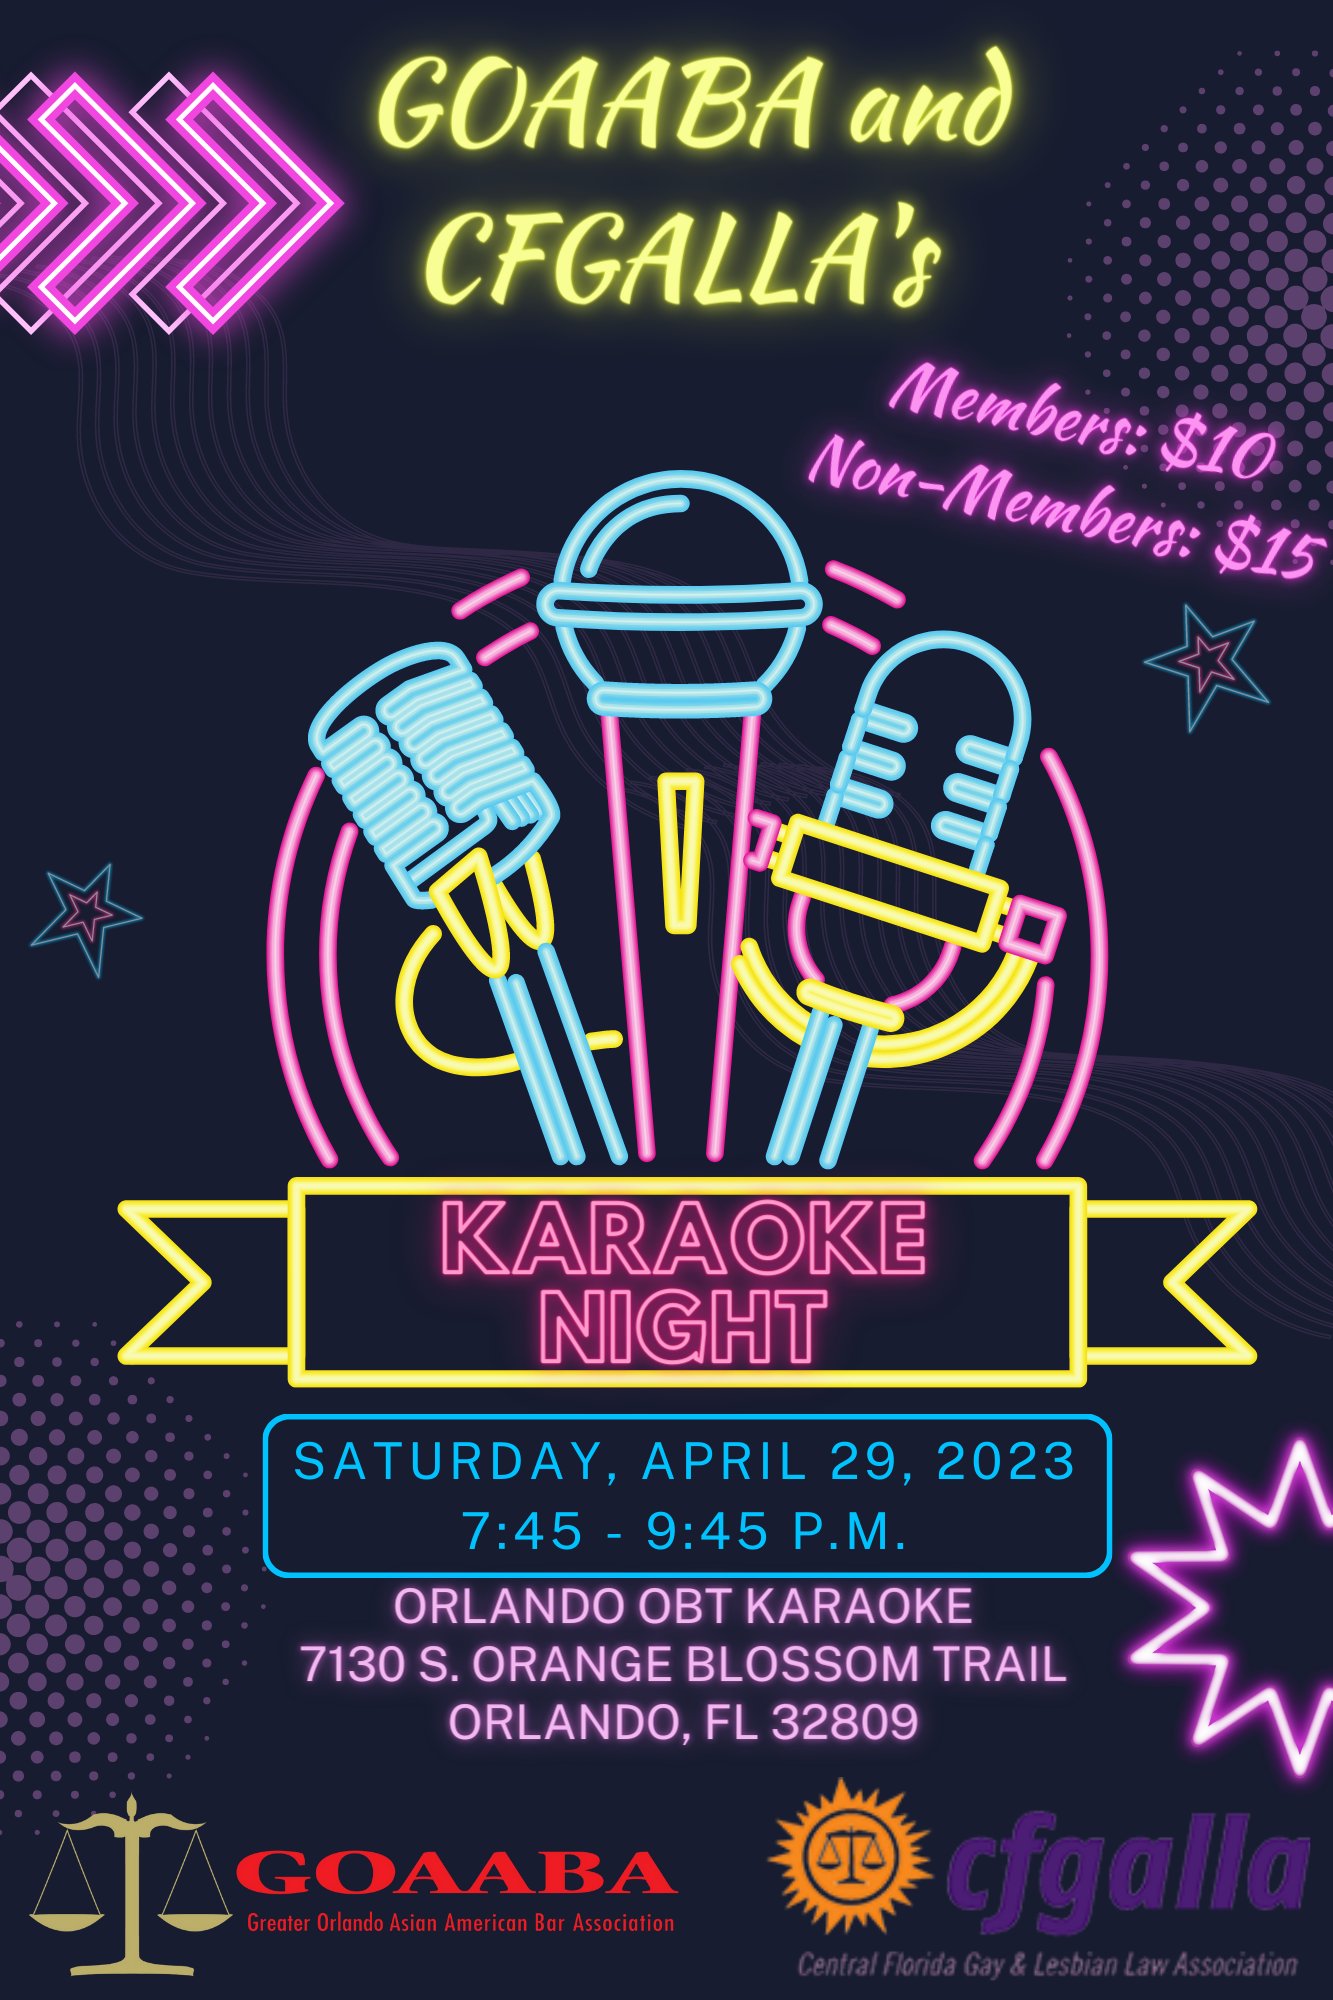 GOAABA & CFGALLA's Karaoke Night!